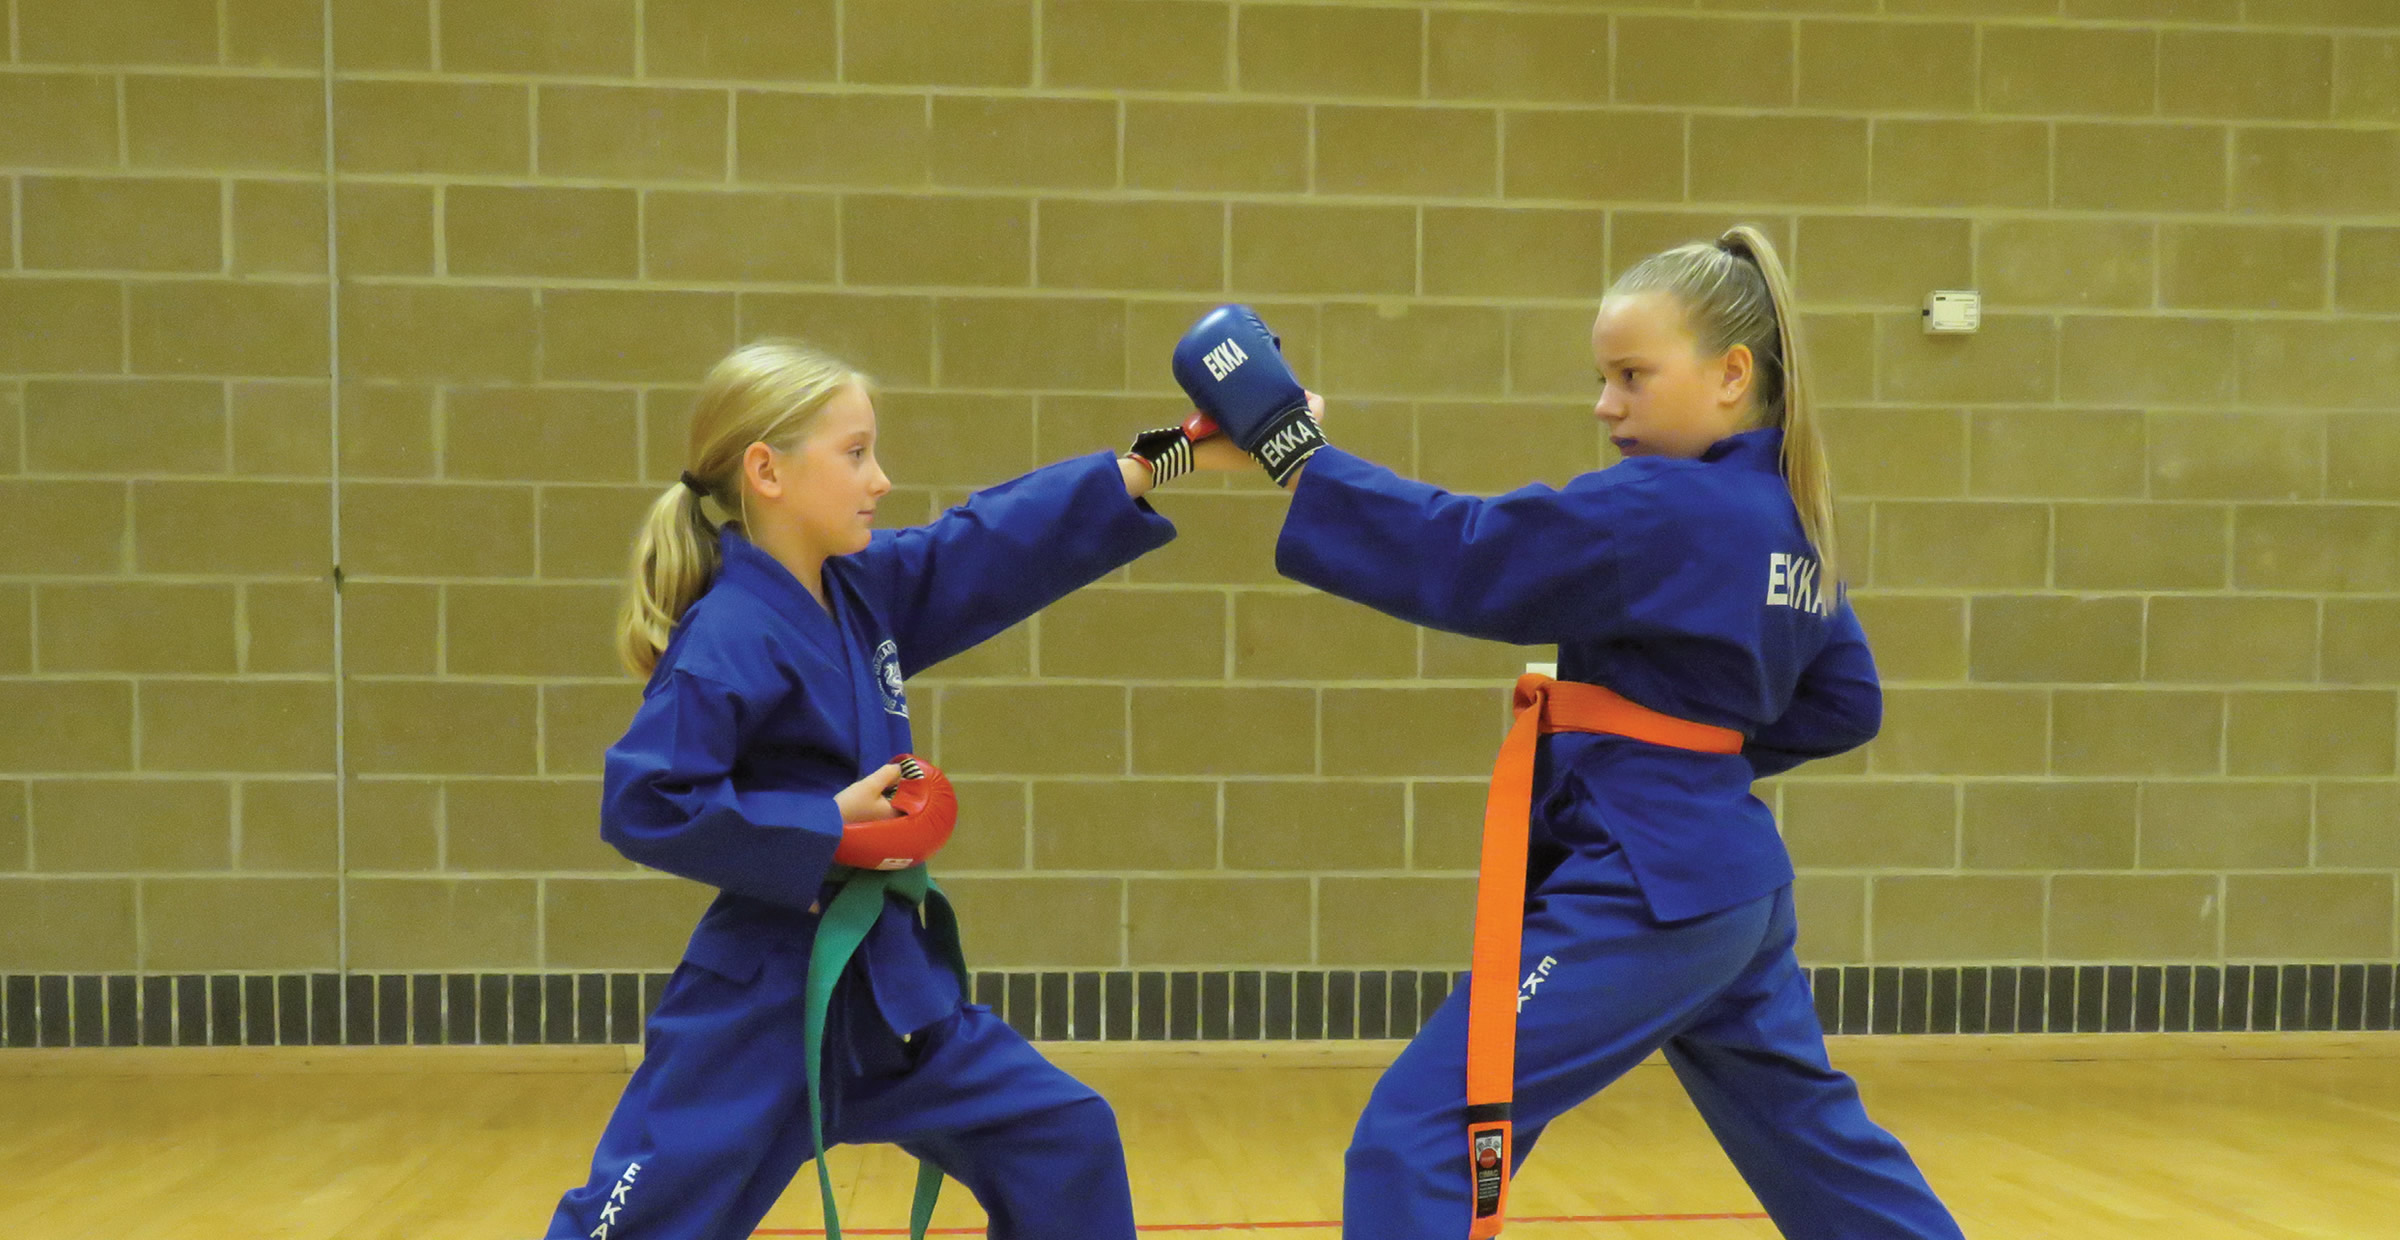 Englands Karate School - Students